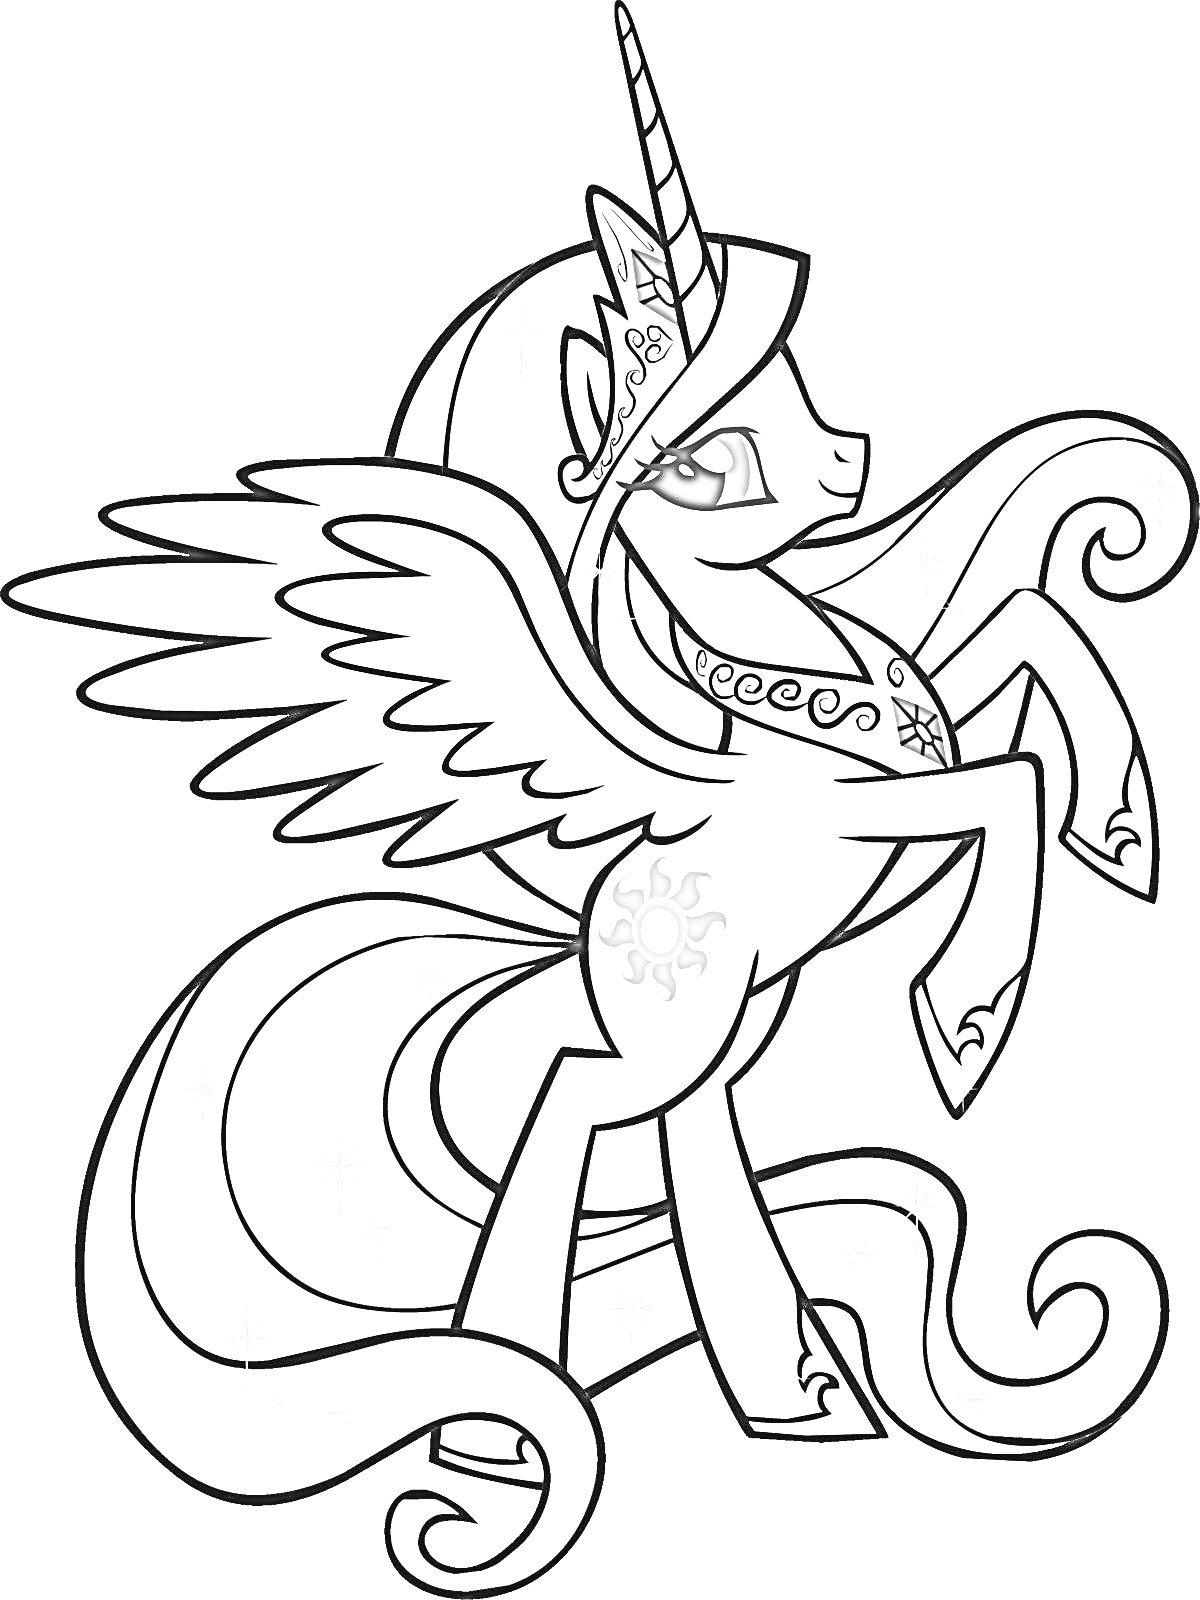 Раскраска Пони с крыльями и рогом, символом солнца на боку и с украшениями на шее